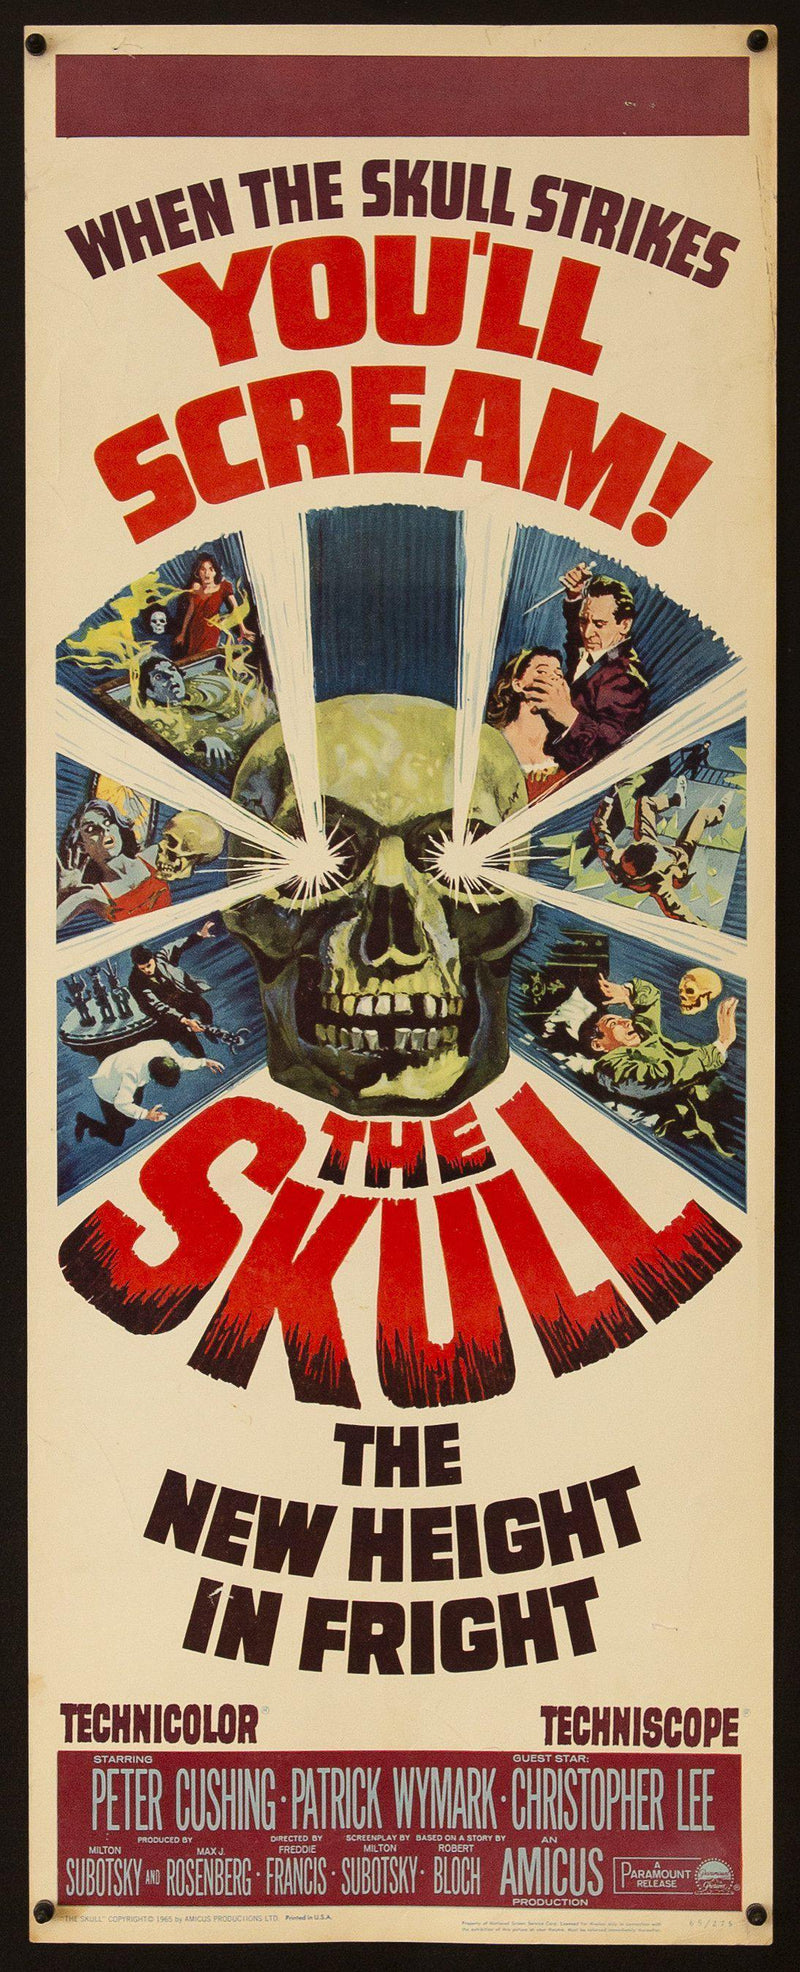 The Skull Insert (14x36) Original Vintage Movie Poster